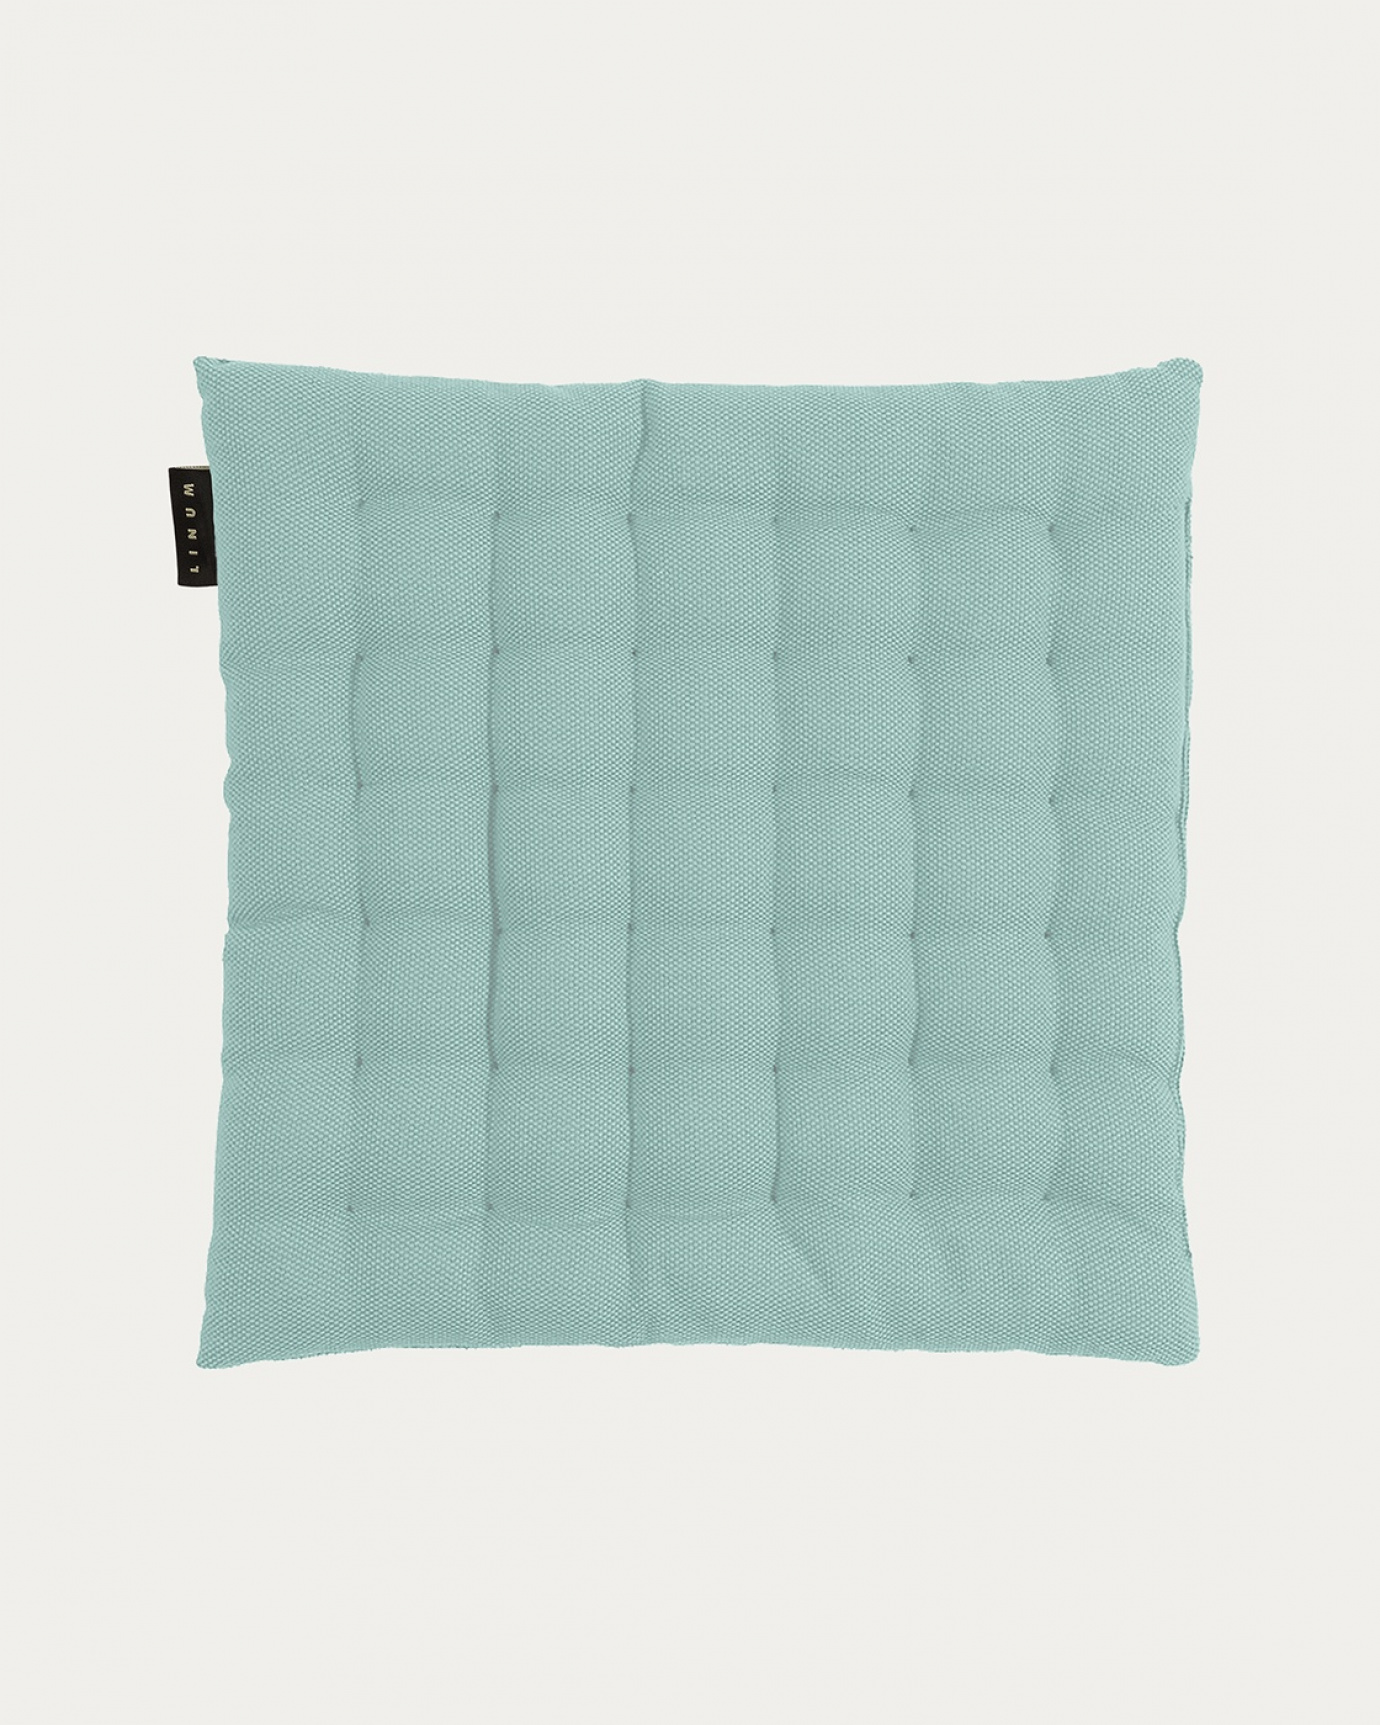 Produktbild dammig turkos PEPPER sittdyna av mjuk bomull med återvunnen polyesterfyllning från LINUM DESIGN. Storlek 40x40 cm.